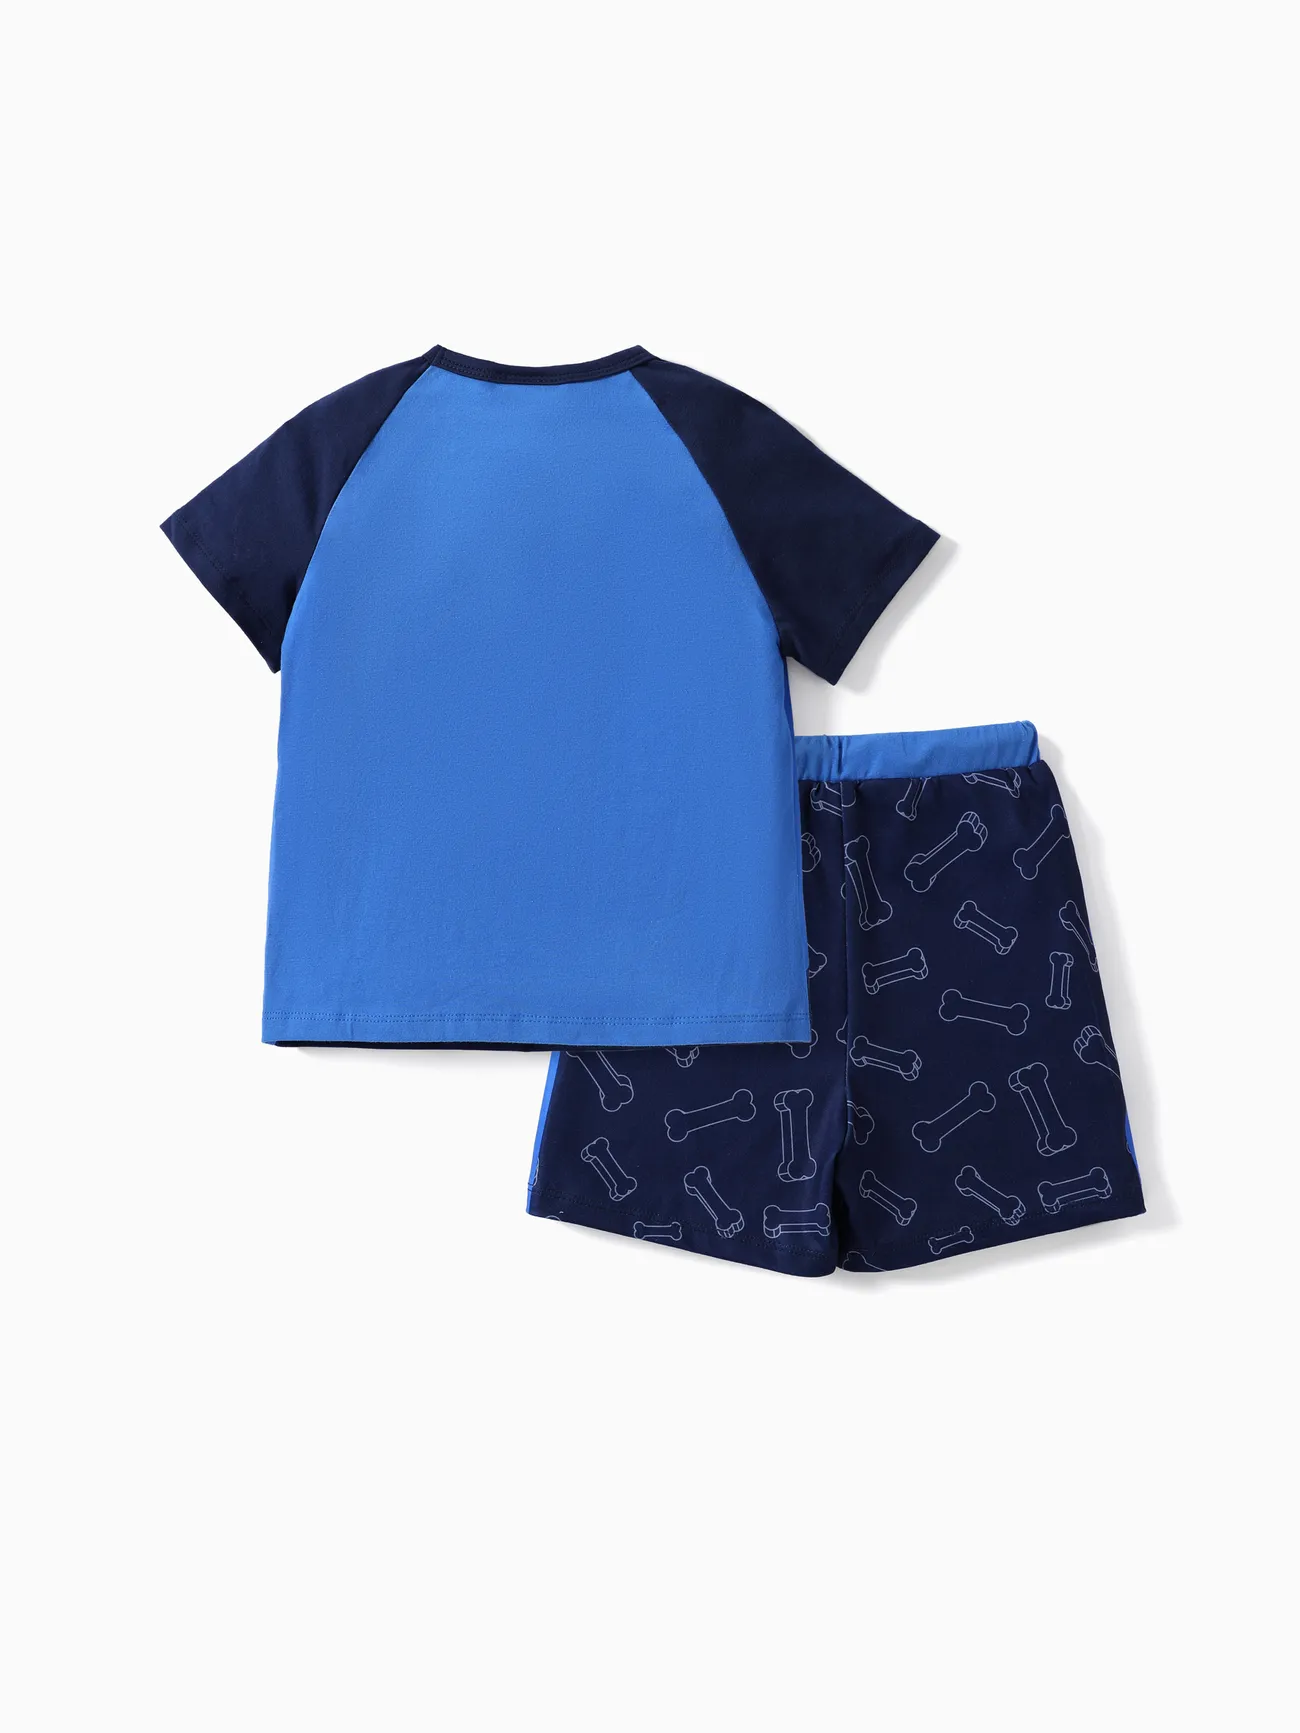 La Pat’ Patrouille 2 pièces Enfant en bas âge Unisexe Couture de tissus Enfantin Chien ensembles de t-shirts Bleu big image 1